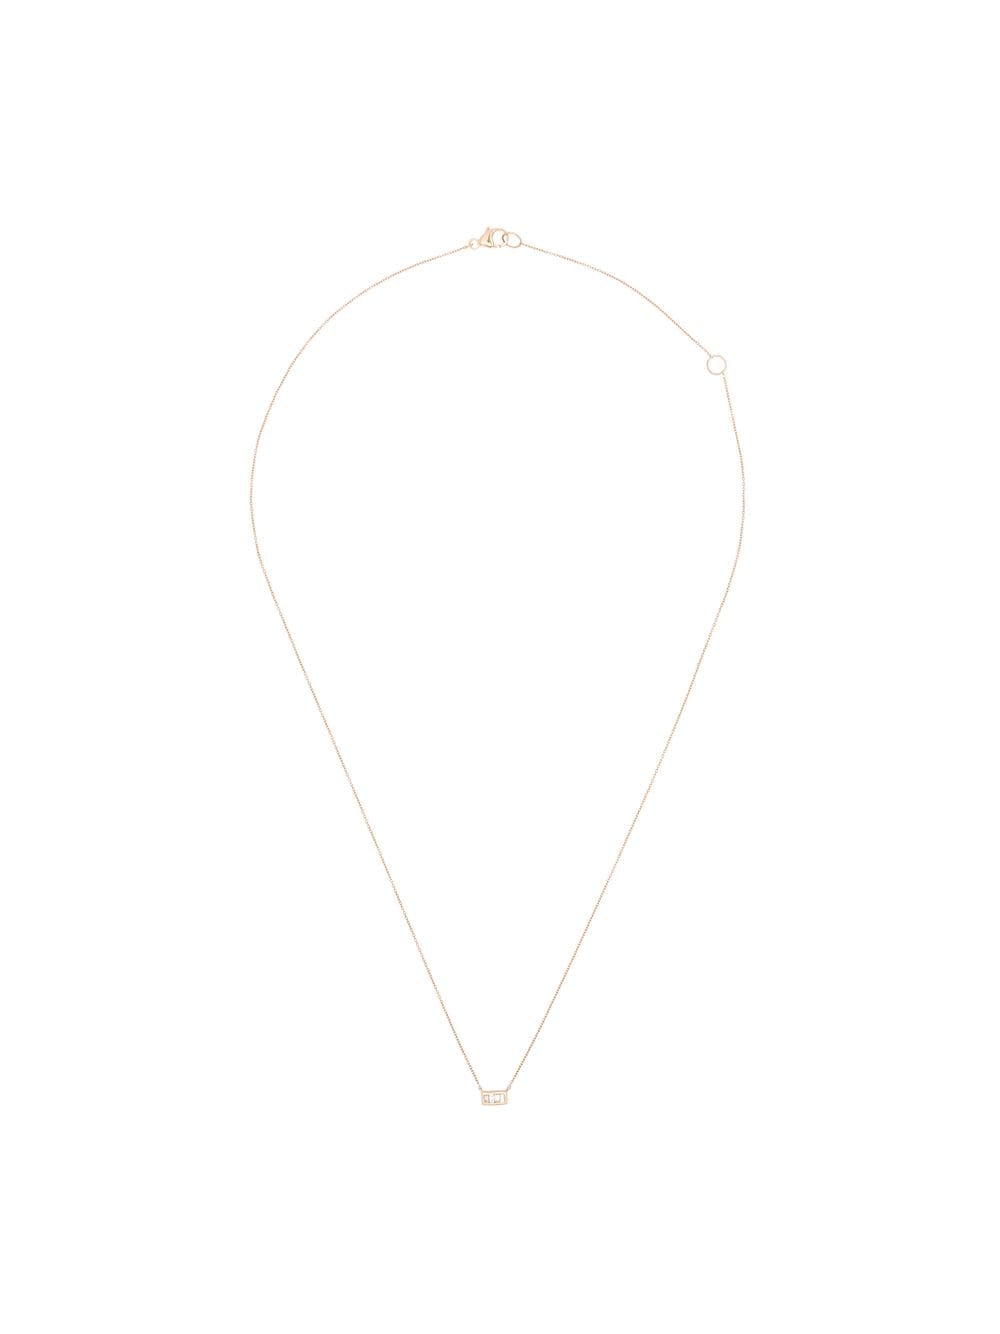 Dana Rebecca Designs 14kt rose gold baguette-cut diamond necklace